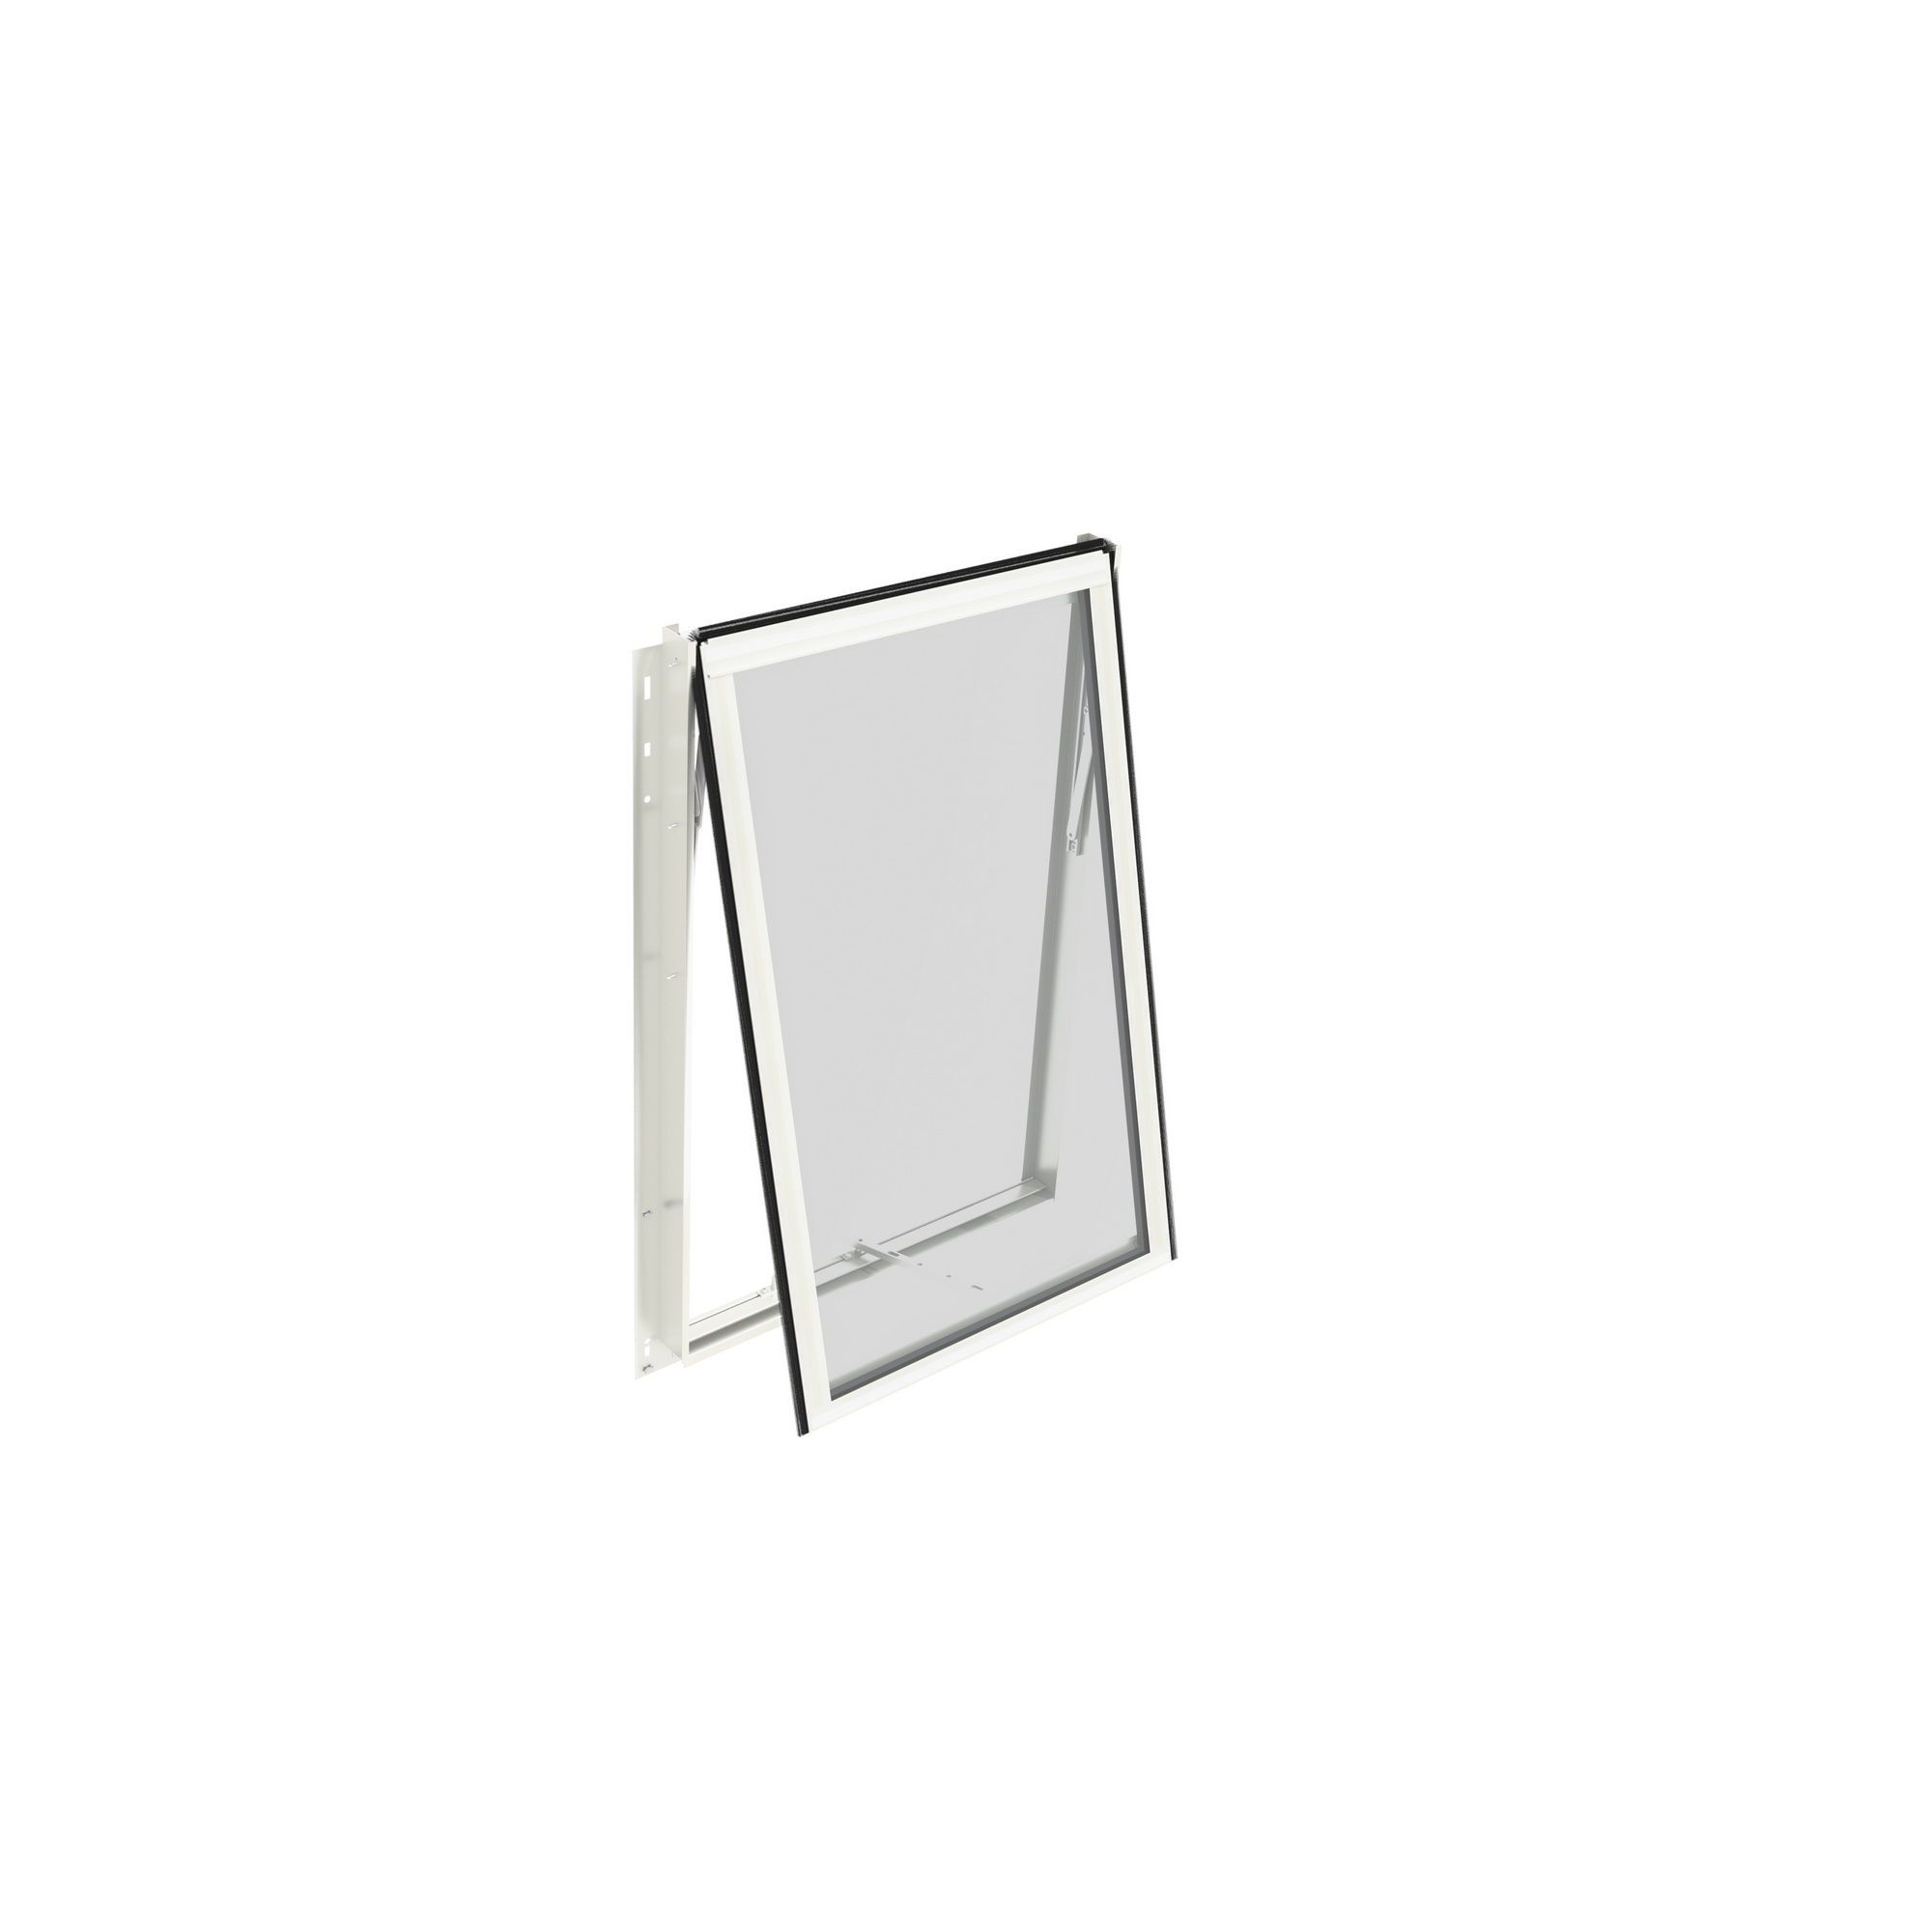 Seitenfenster für Gewächshaus 'Athena/Aphrodite' weiß 87,6 x 55,4 cm + product picture